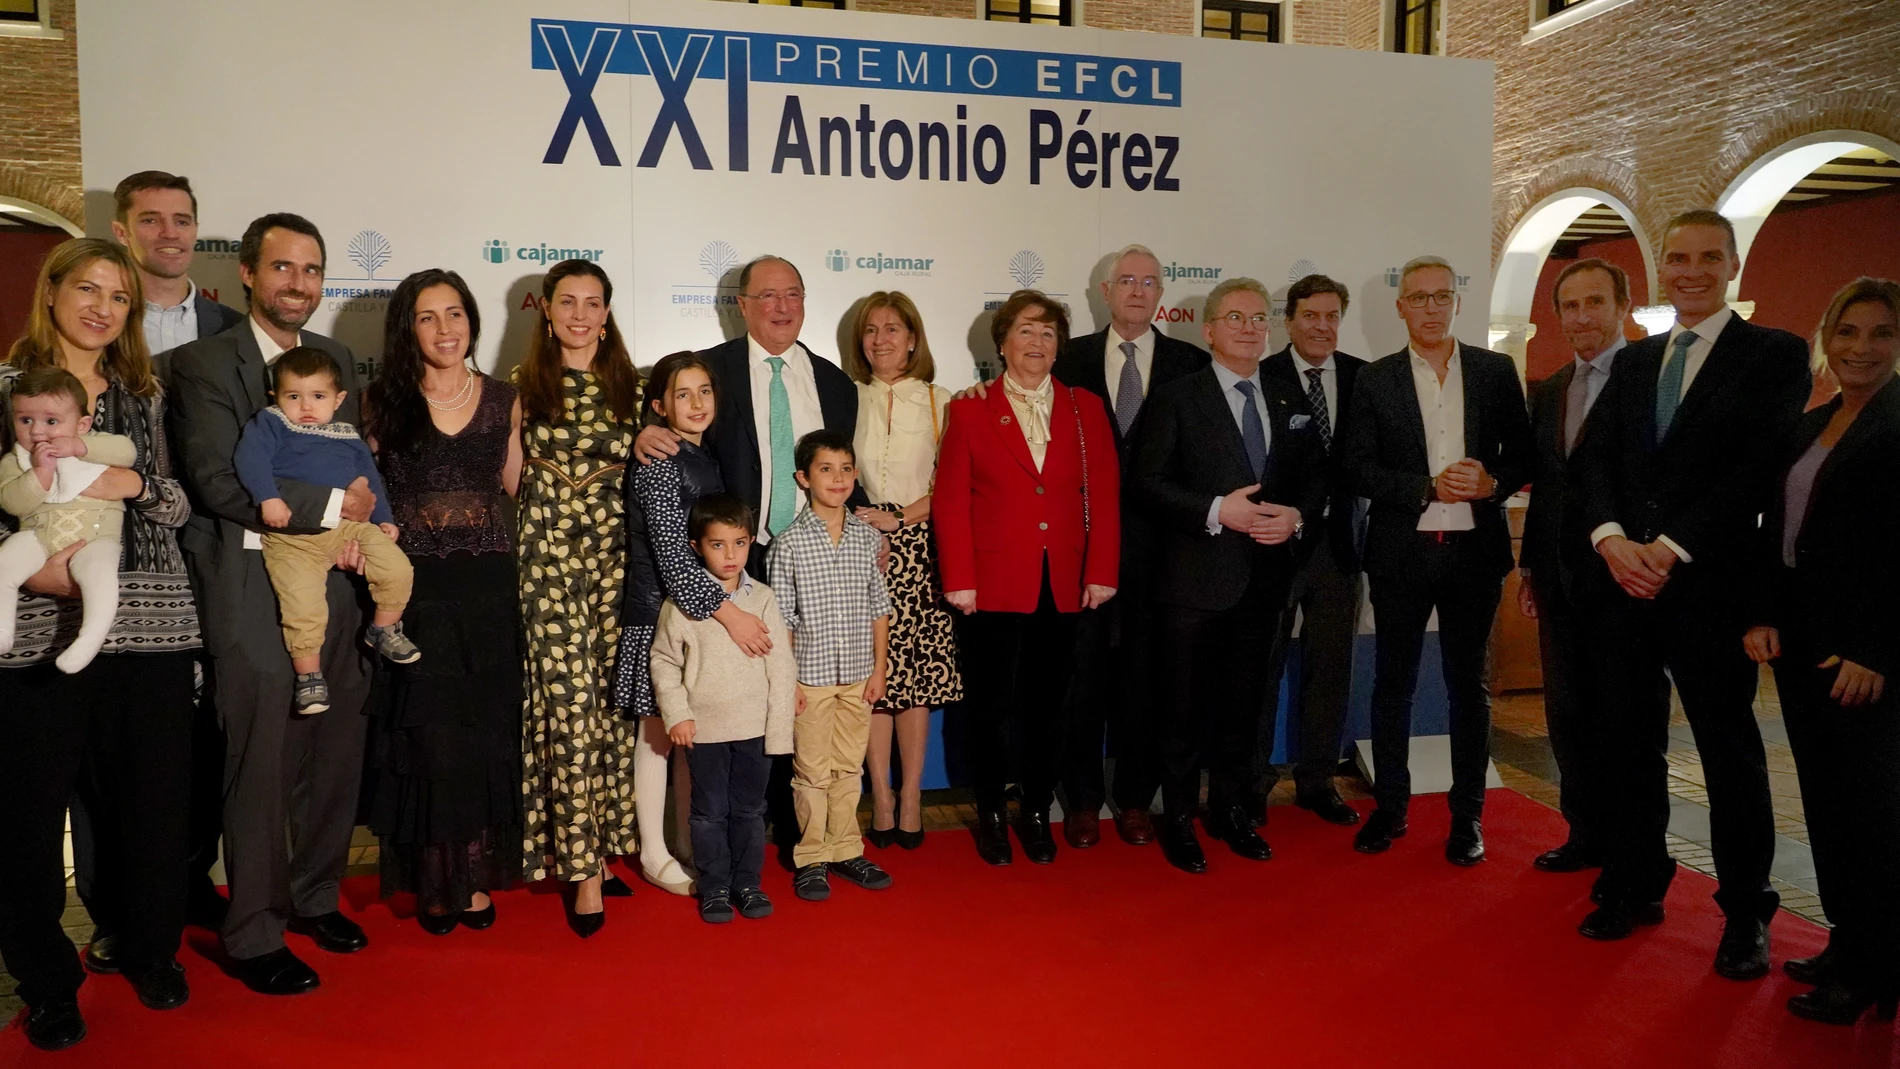 Entrega de premio EFCL "Antonio Pérez" a la familia Moro